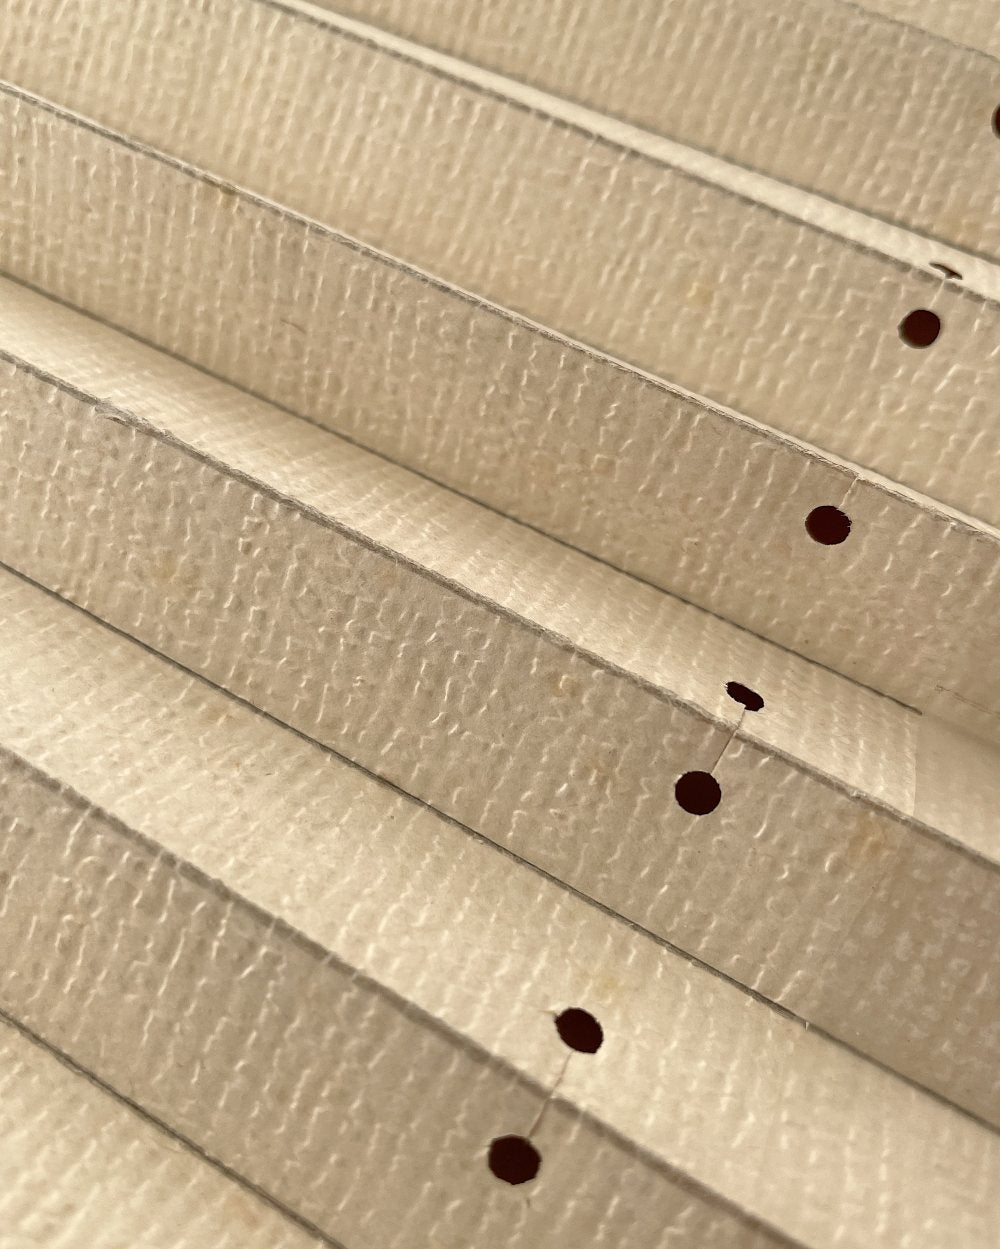 Sådan laver du en plisseret i papir – papirpynt